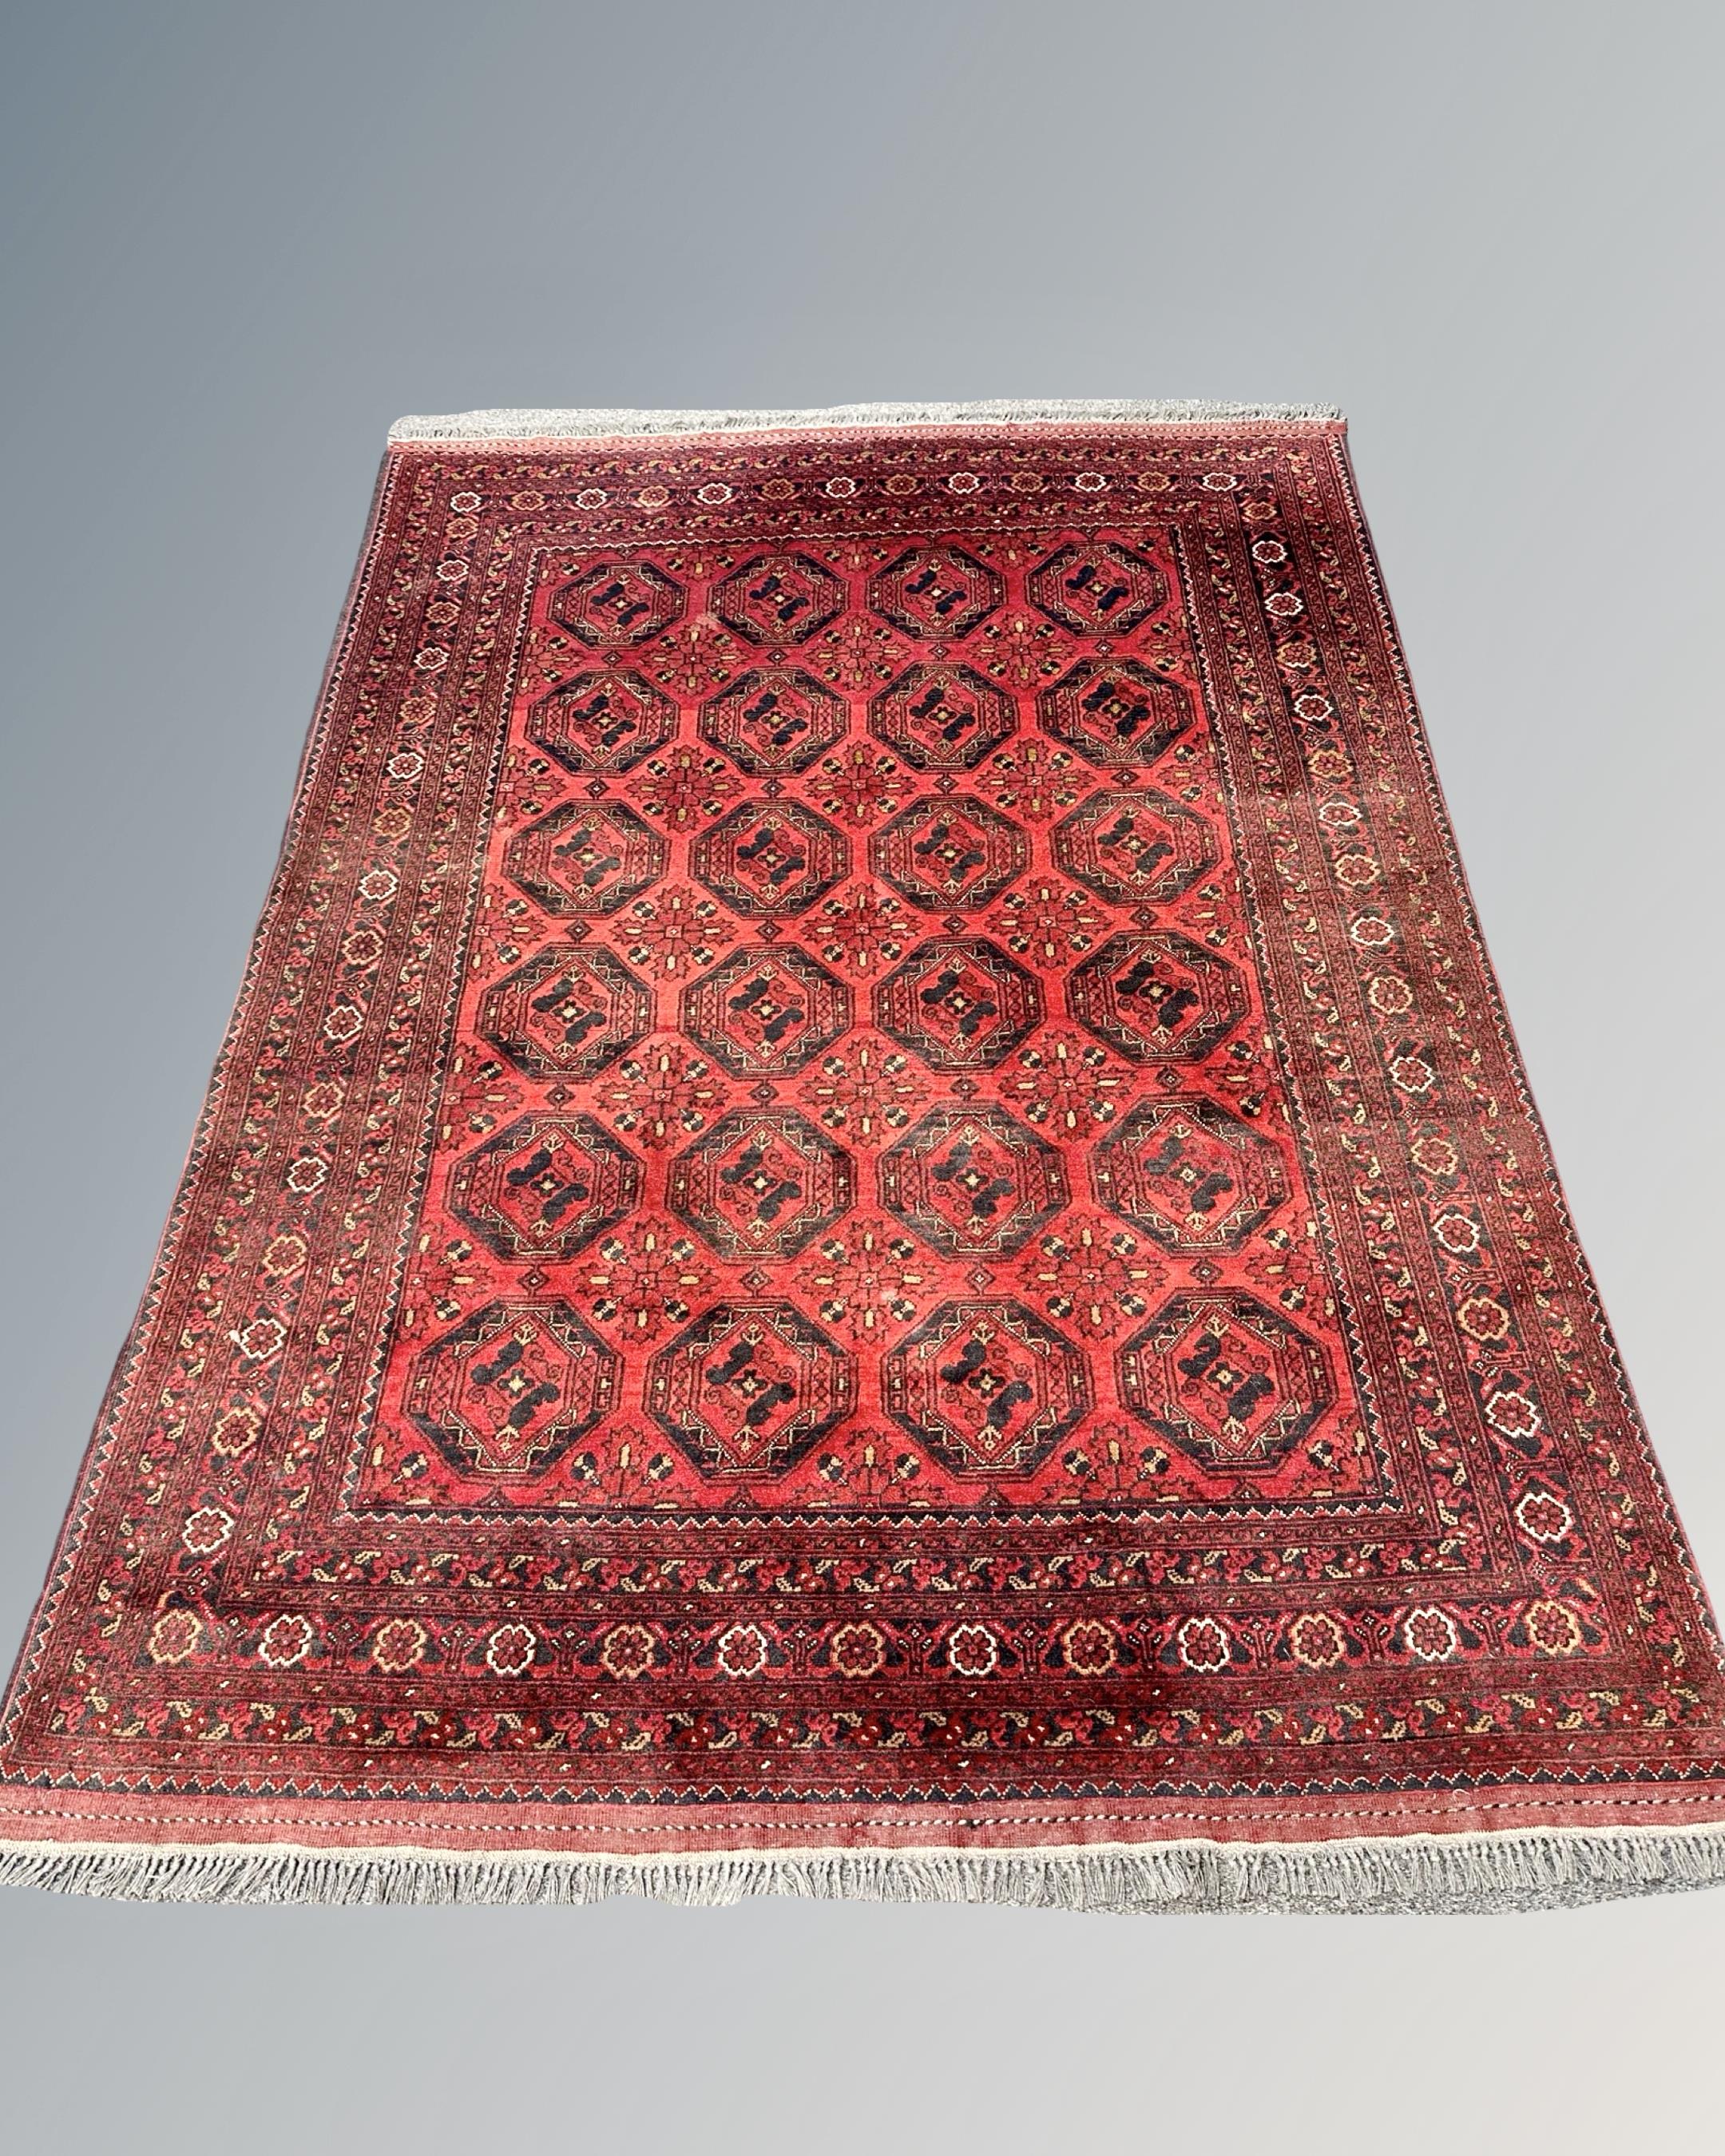 A Bokhara rug, Afghanistan, 148cm by 203cm.